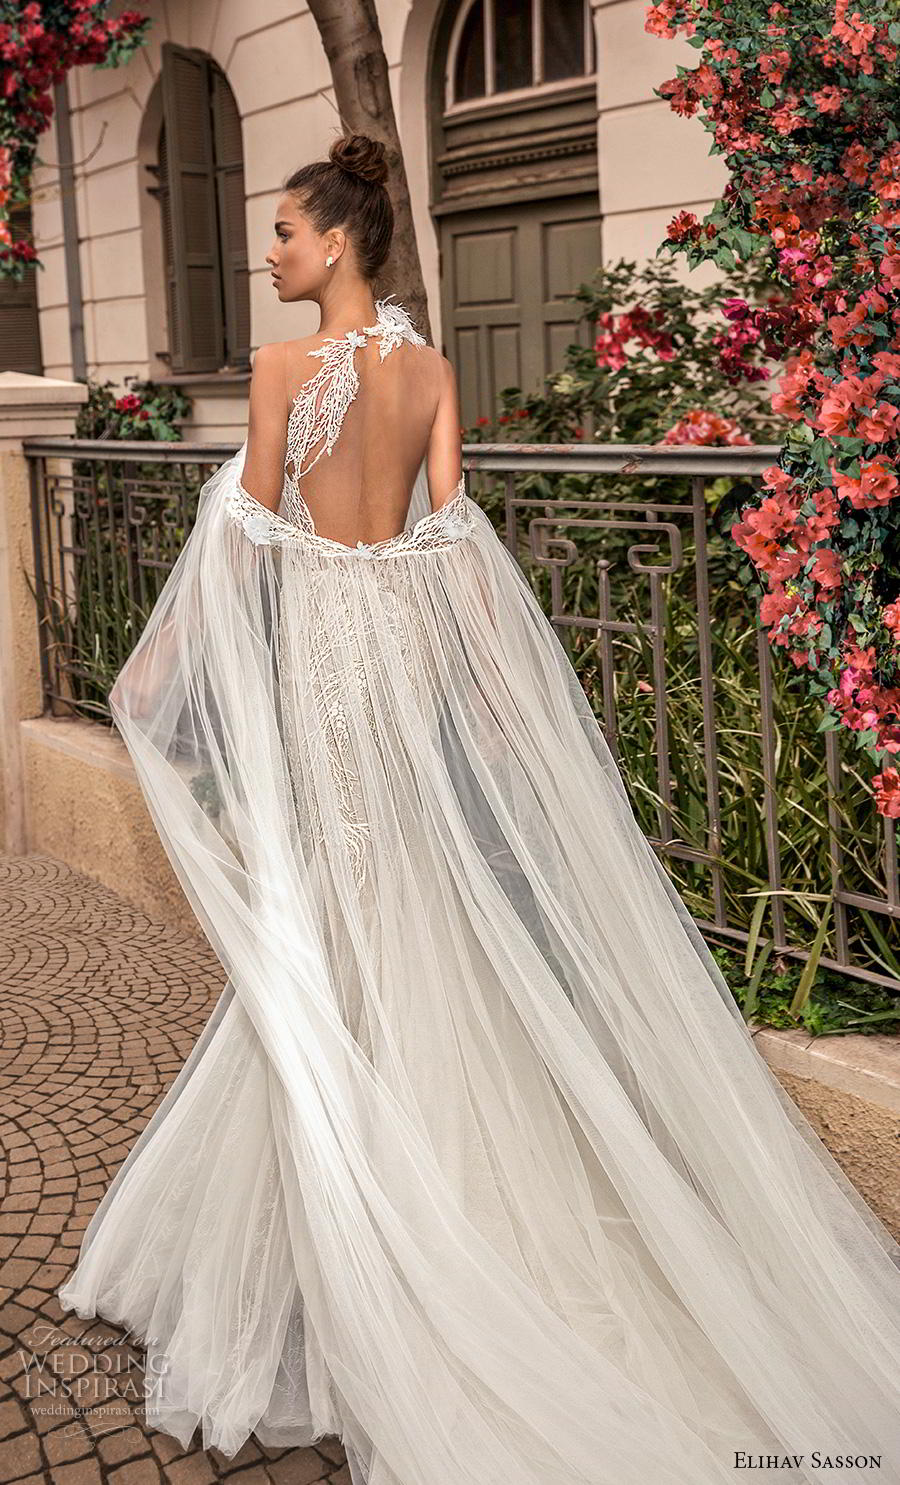 Elihav Sasson 2019 Wedding Dresses Wedding Inspirasi